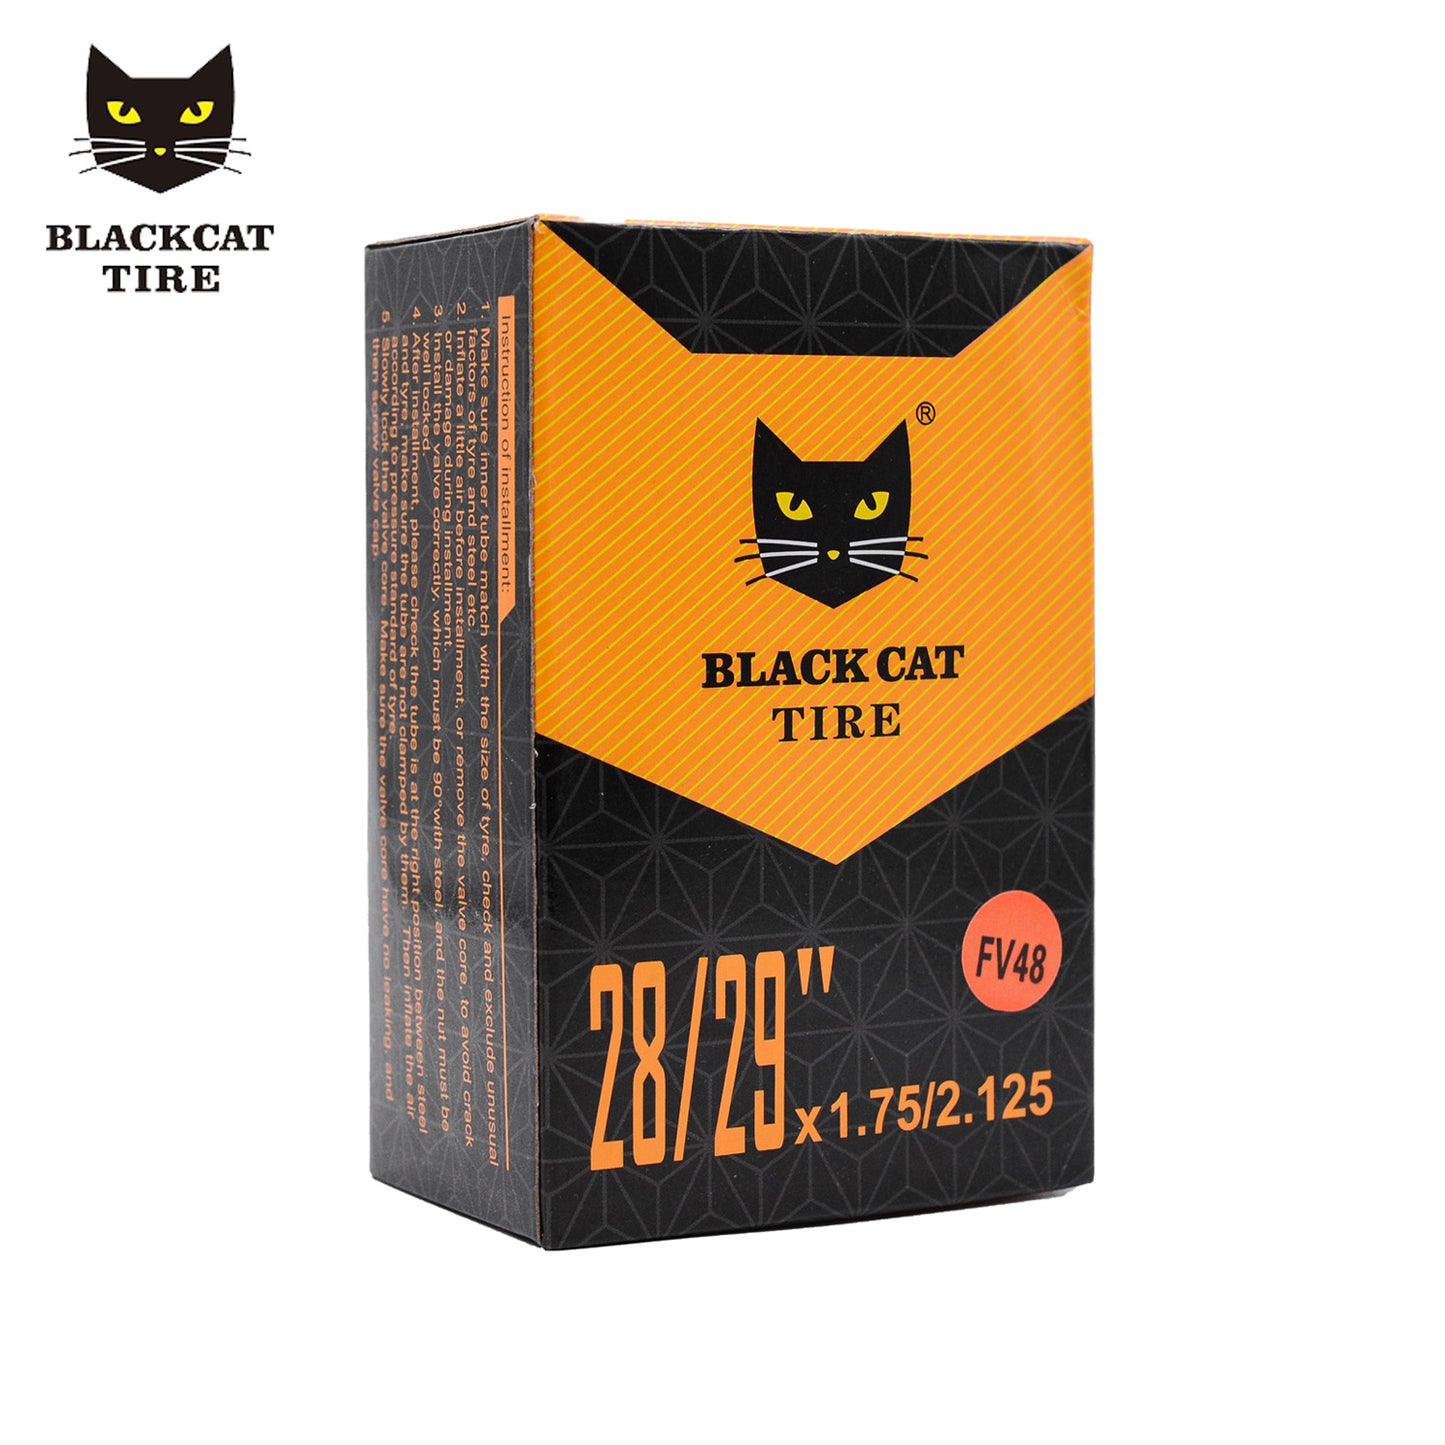 Black Cat Inner Tube 29x1.75-2.125 48mm Valve